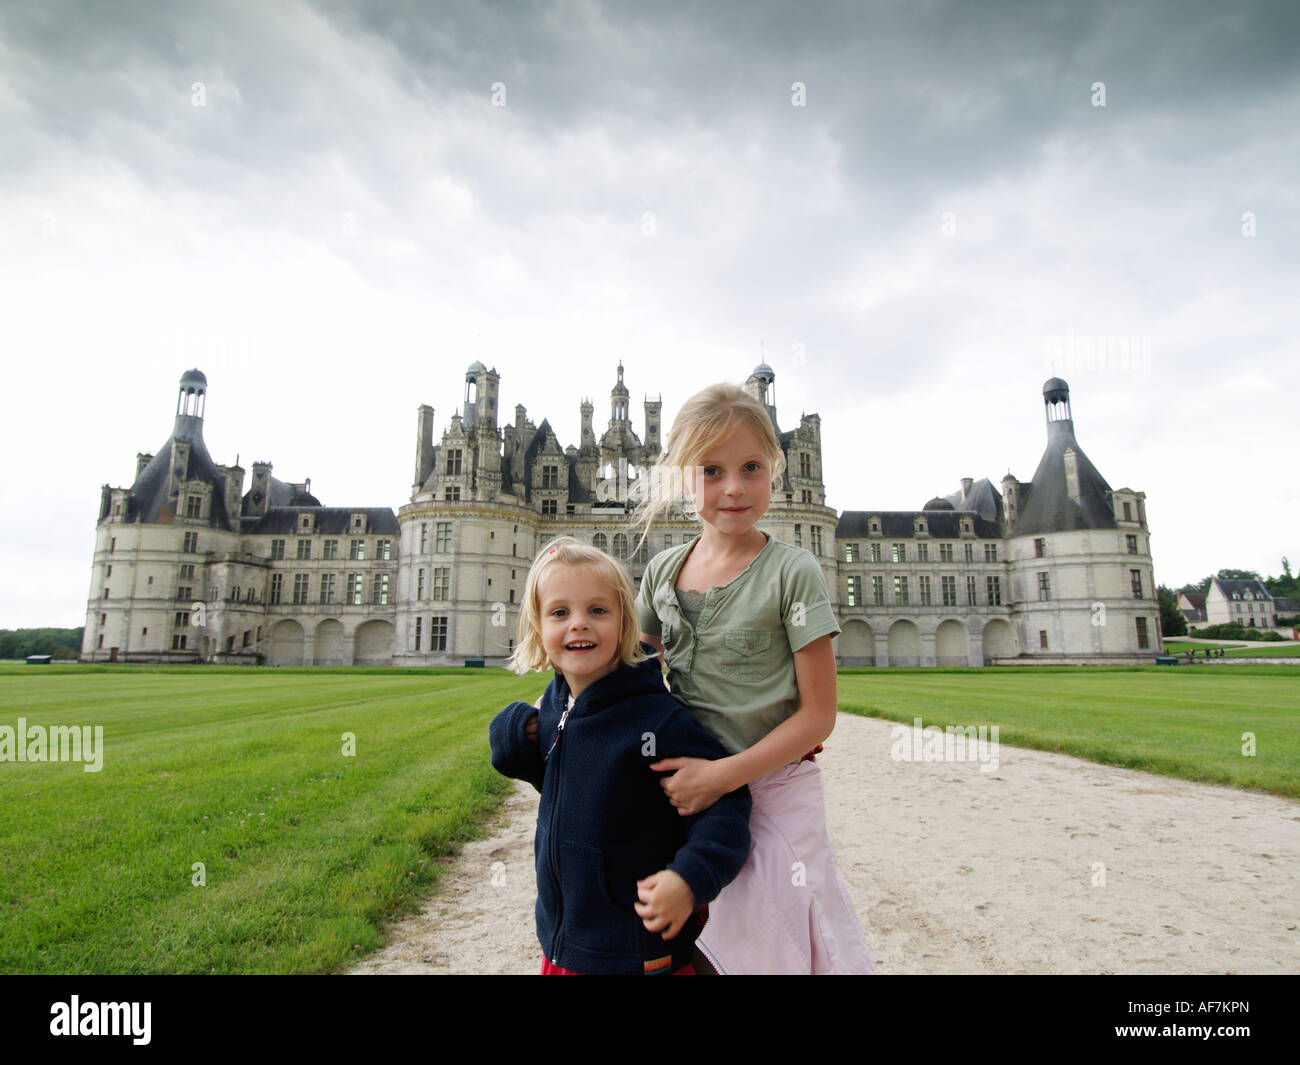 Deux enfants enfants filles soeurs posant devant le château de Chambord château vallée de la loire france Banque D'Images